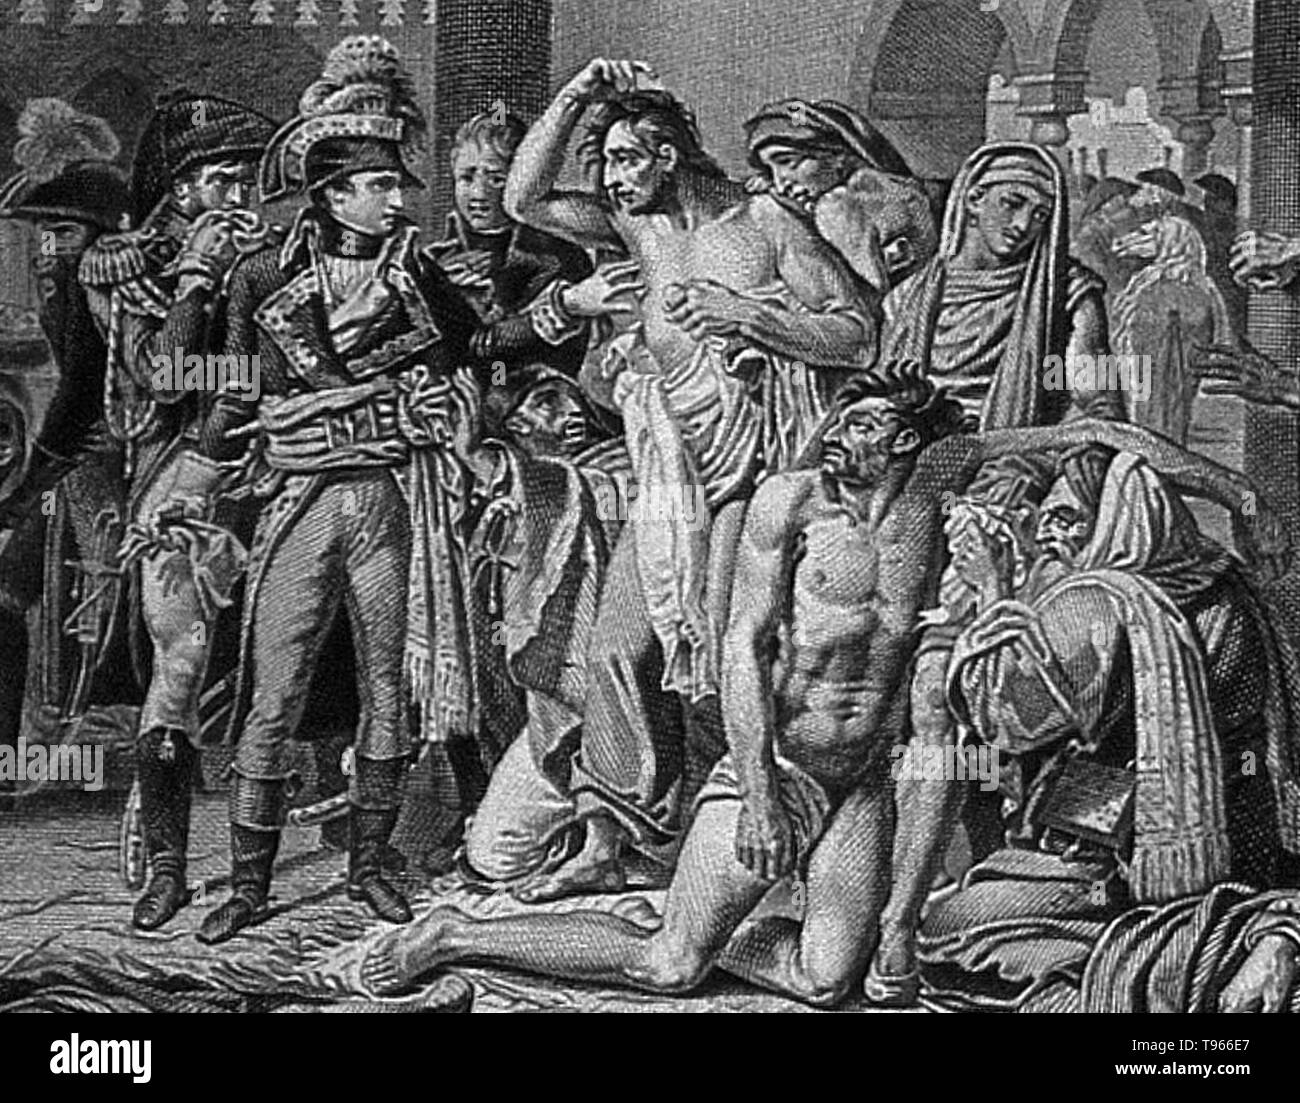 Visita por Napoleón Bonaparte a los apestados de Jaffa, Egipto, en 1799. Los pacientes rodean a Napoleón, en el patio del hospital. Napoleón Bonaparte (15 de agosto de 1769 - 5 de mayo de 1821) fue un líder político y militar francés durante las últimas etapas de la Revolución Francesa. Como Napoleón I, él era emperador de los franceses de 1804 a 1815. Foto de stock